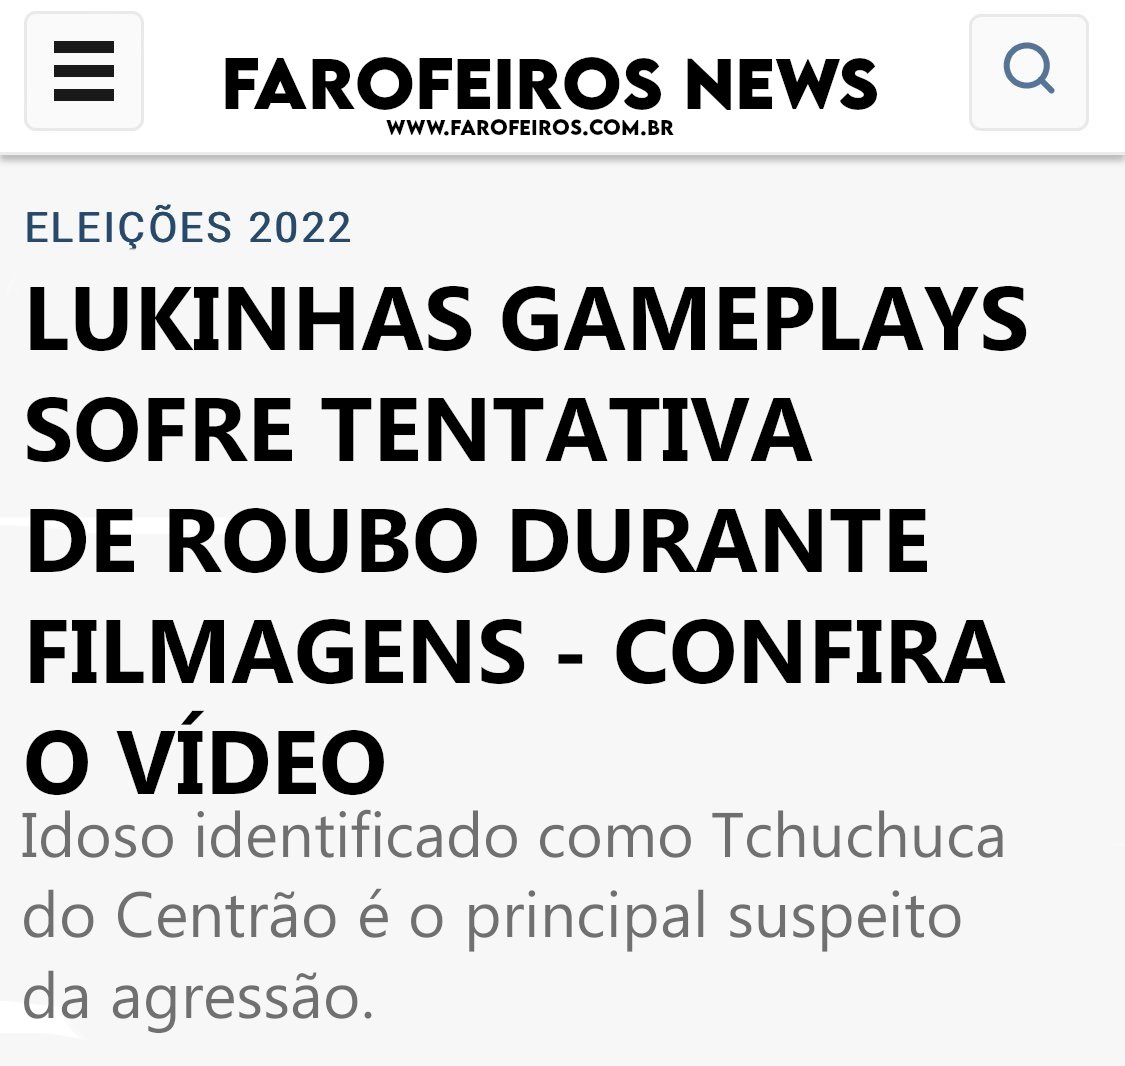 Tchuchuca do Centrão - Lukinhas plays - Blog Farofeiros